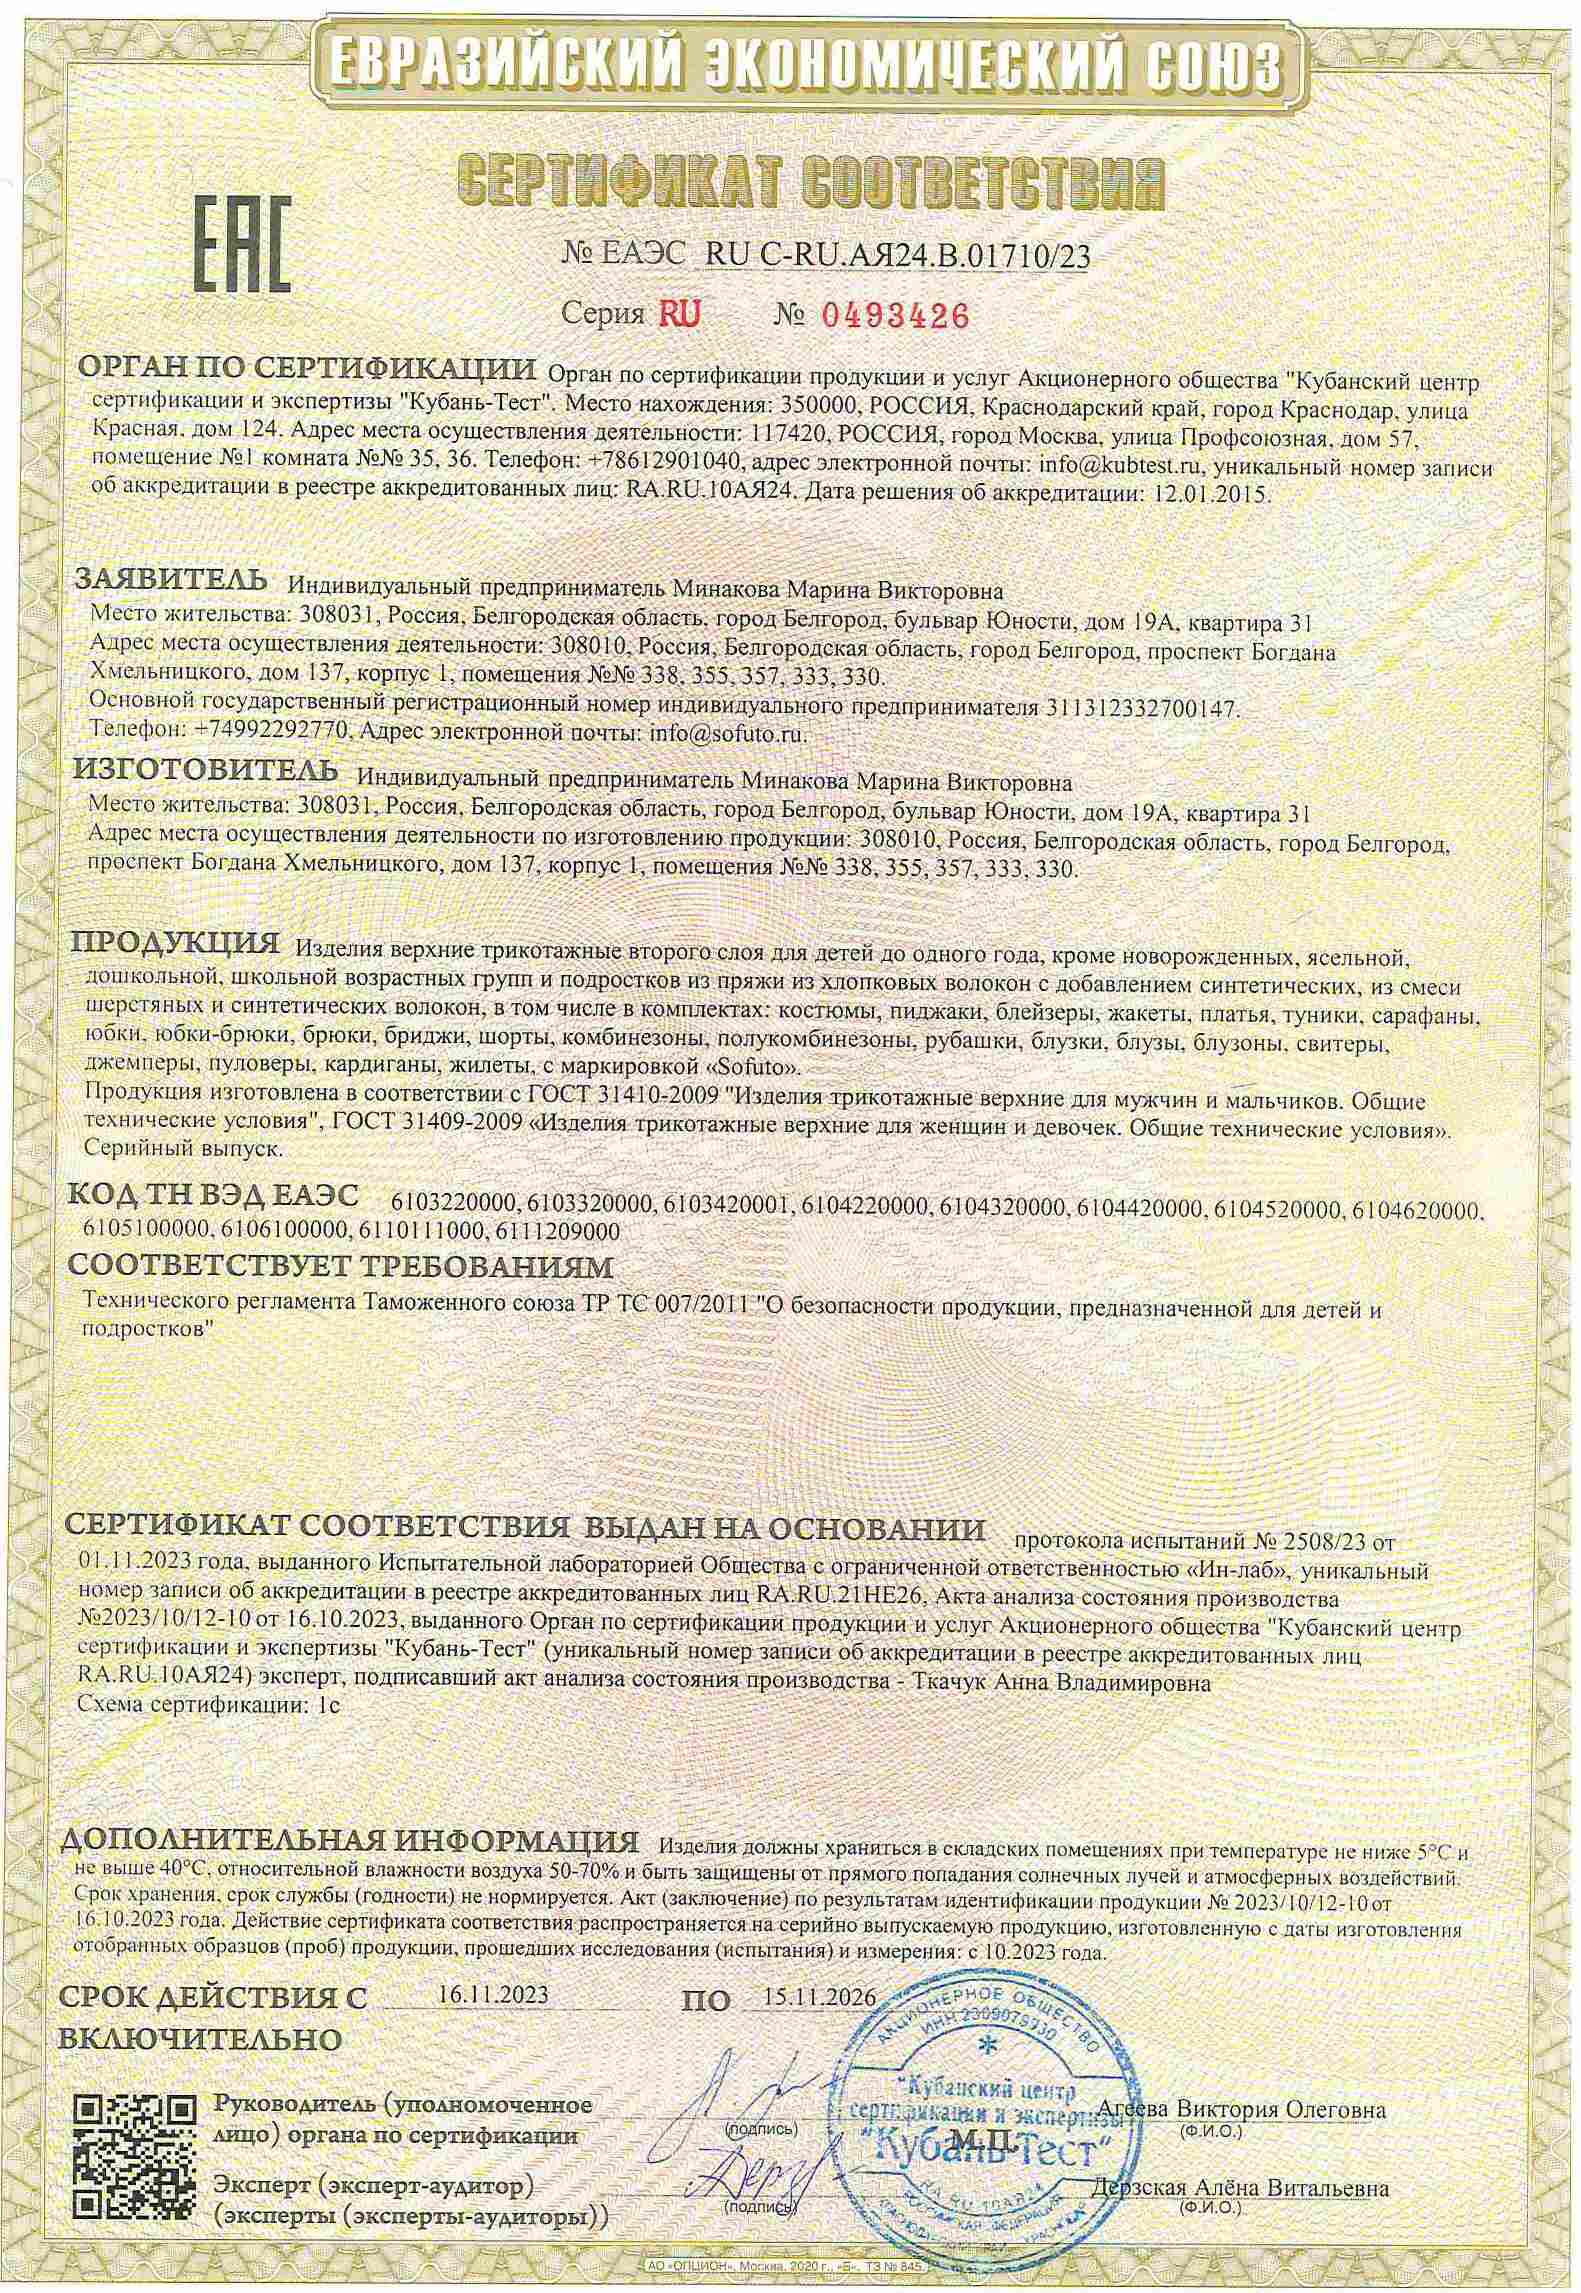 Сертификат соответствия ТС ТР 007/2011 на трикотажные изделия второго слоя ТМ Sofuto для детей